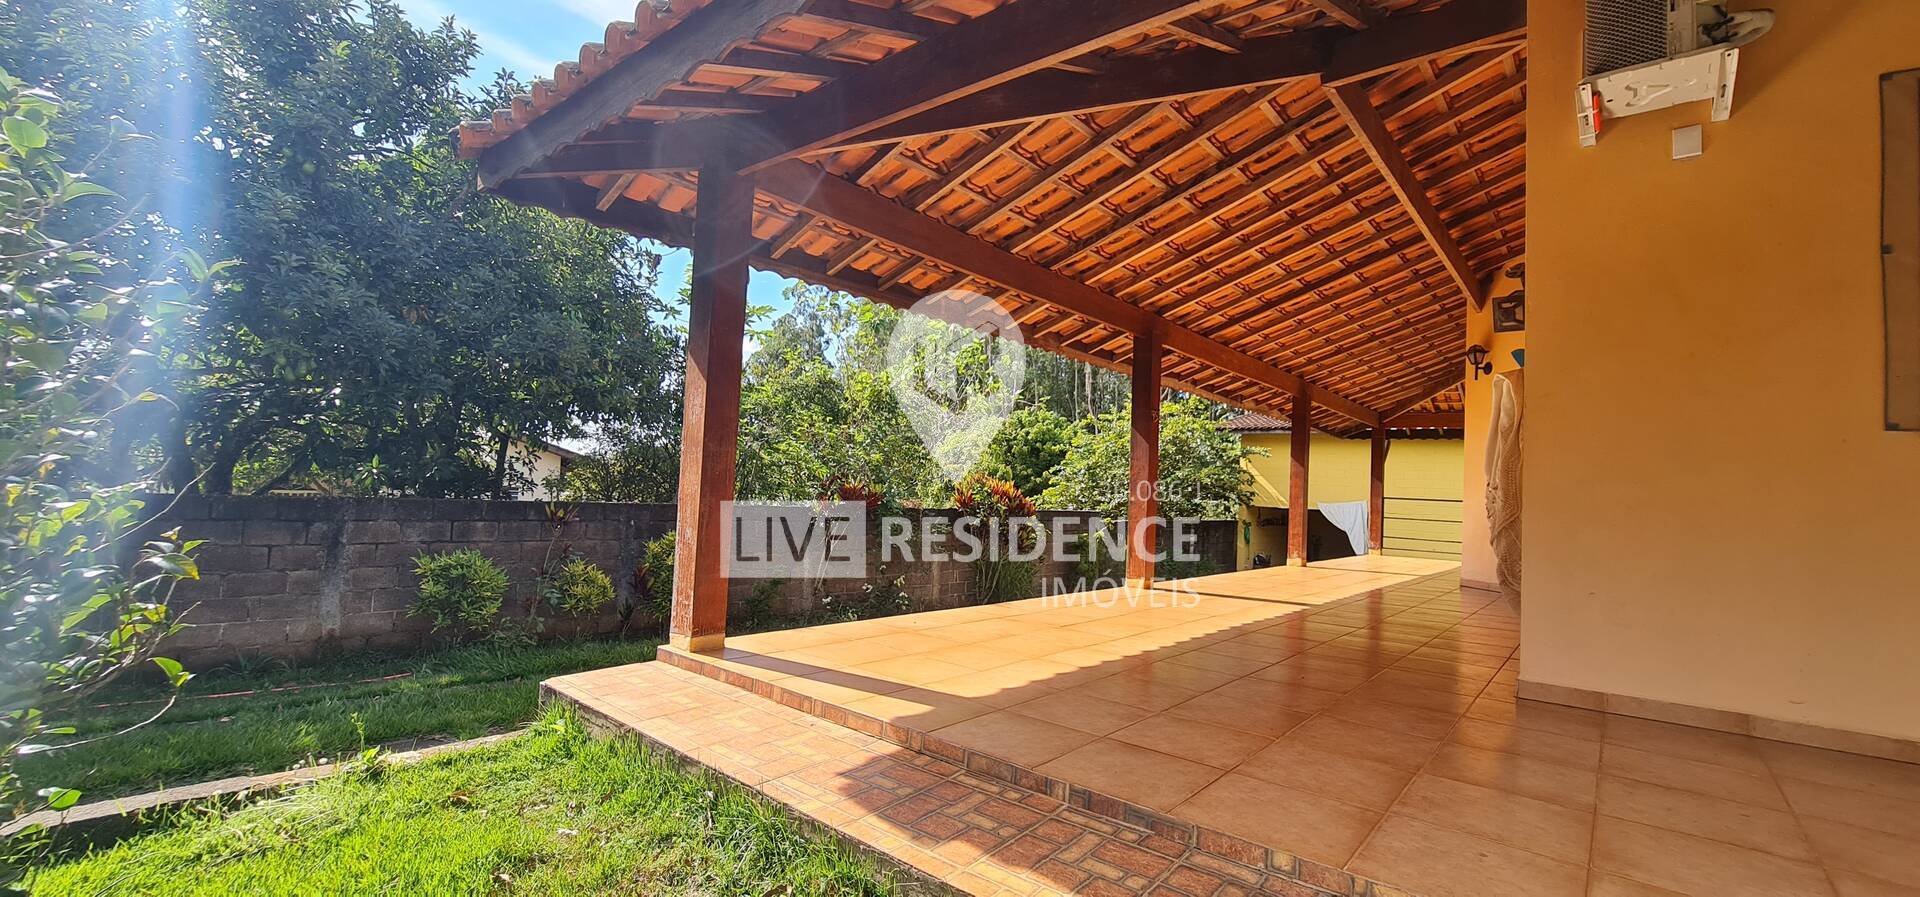 Condomínio Parque São Gabriel em Itatiba SP Live Residence